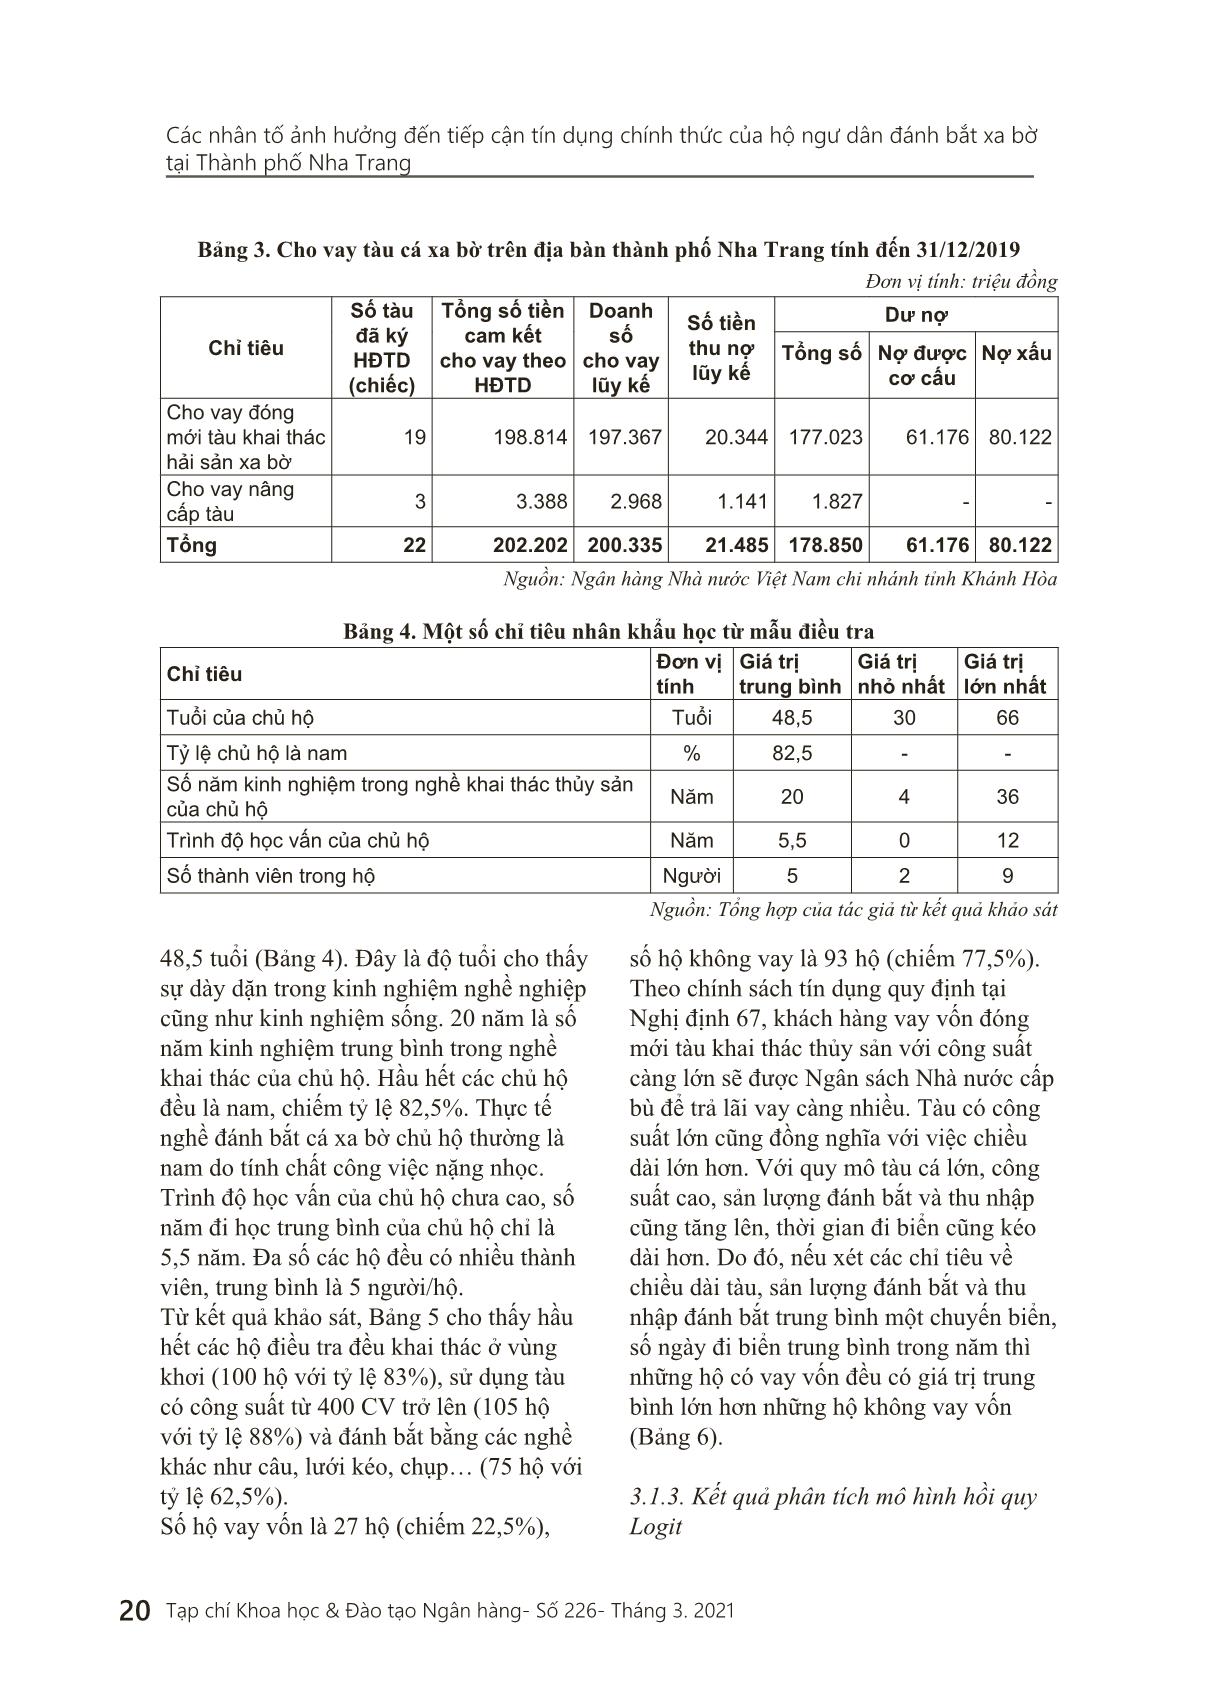 Các nhân tố ảnh hưởng đến tiếp cận tín dụng chính thức của hộ ngư dân đánh bắt xa bờ tại thành phố Nha Trang trang 7